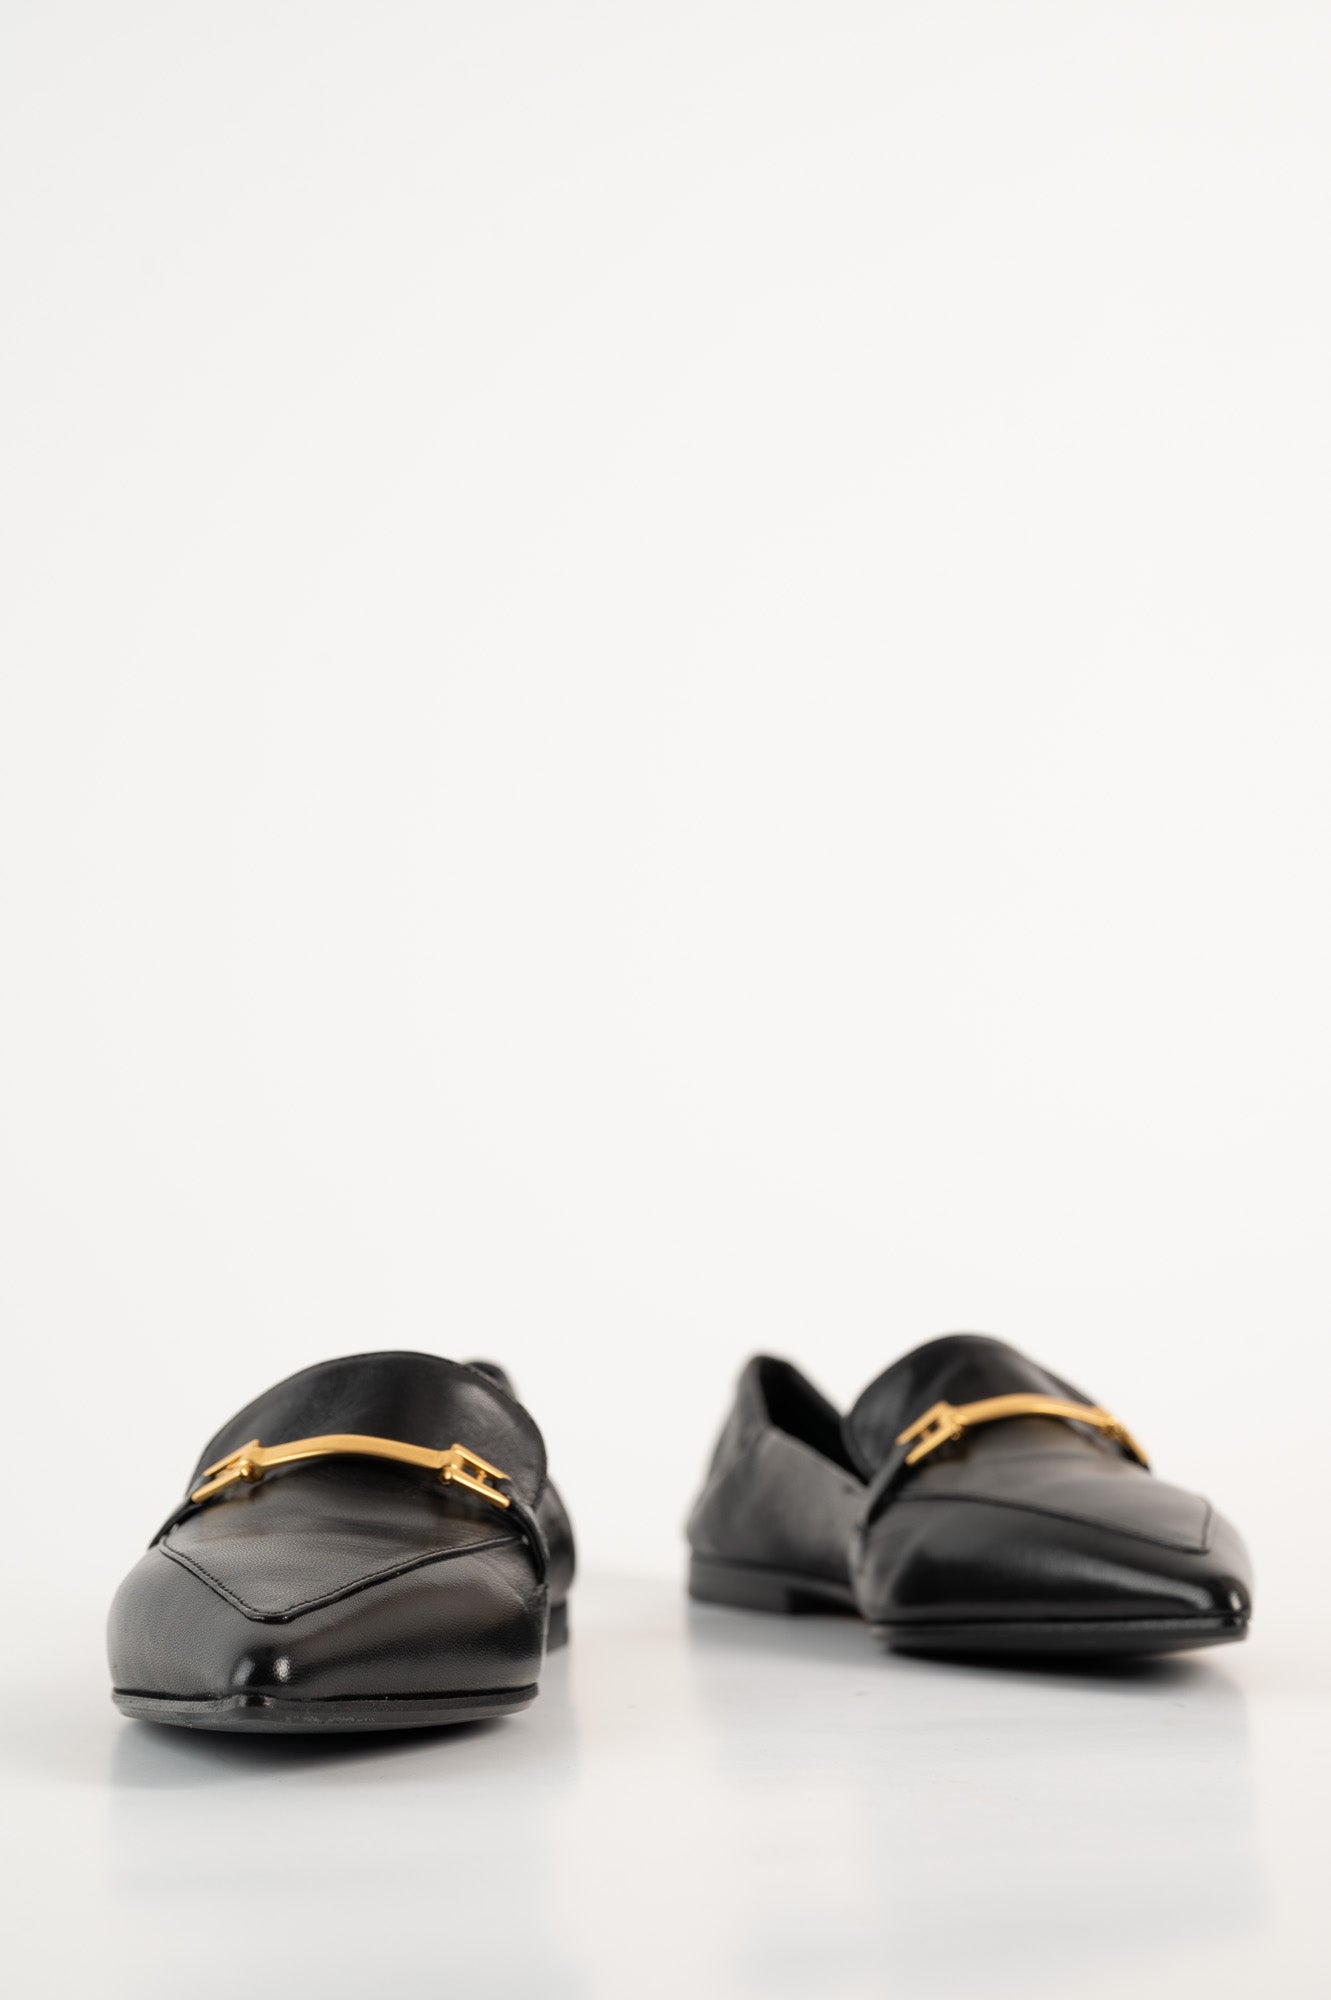 Loafer Ingrid 790 | Black Leather